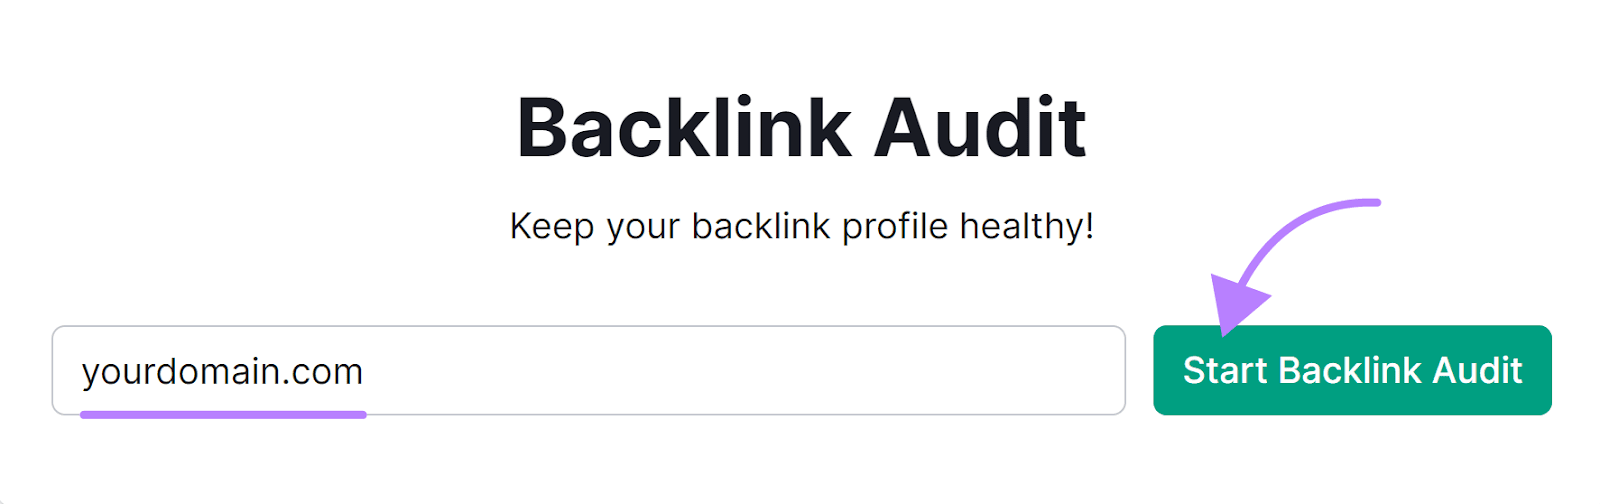 Backlink Audit instrumentality   hunt  bar